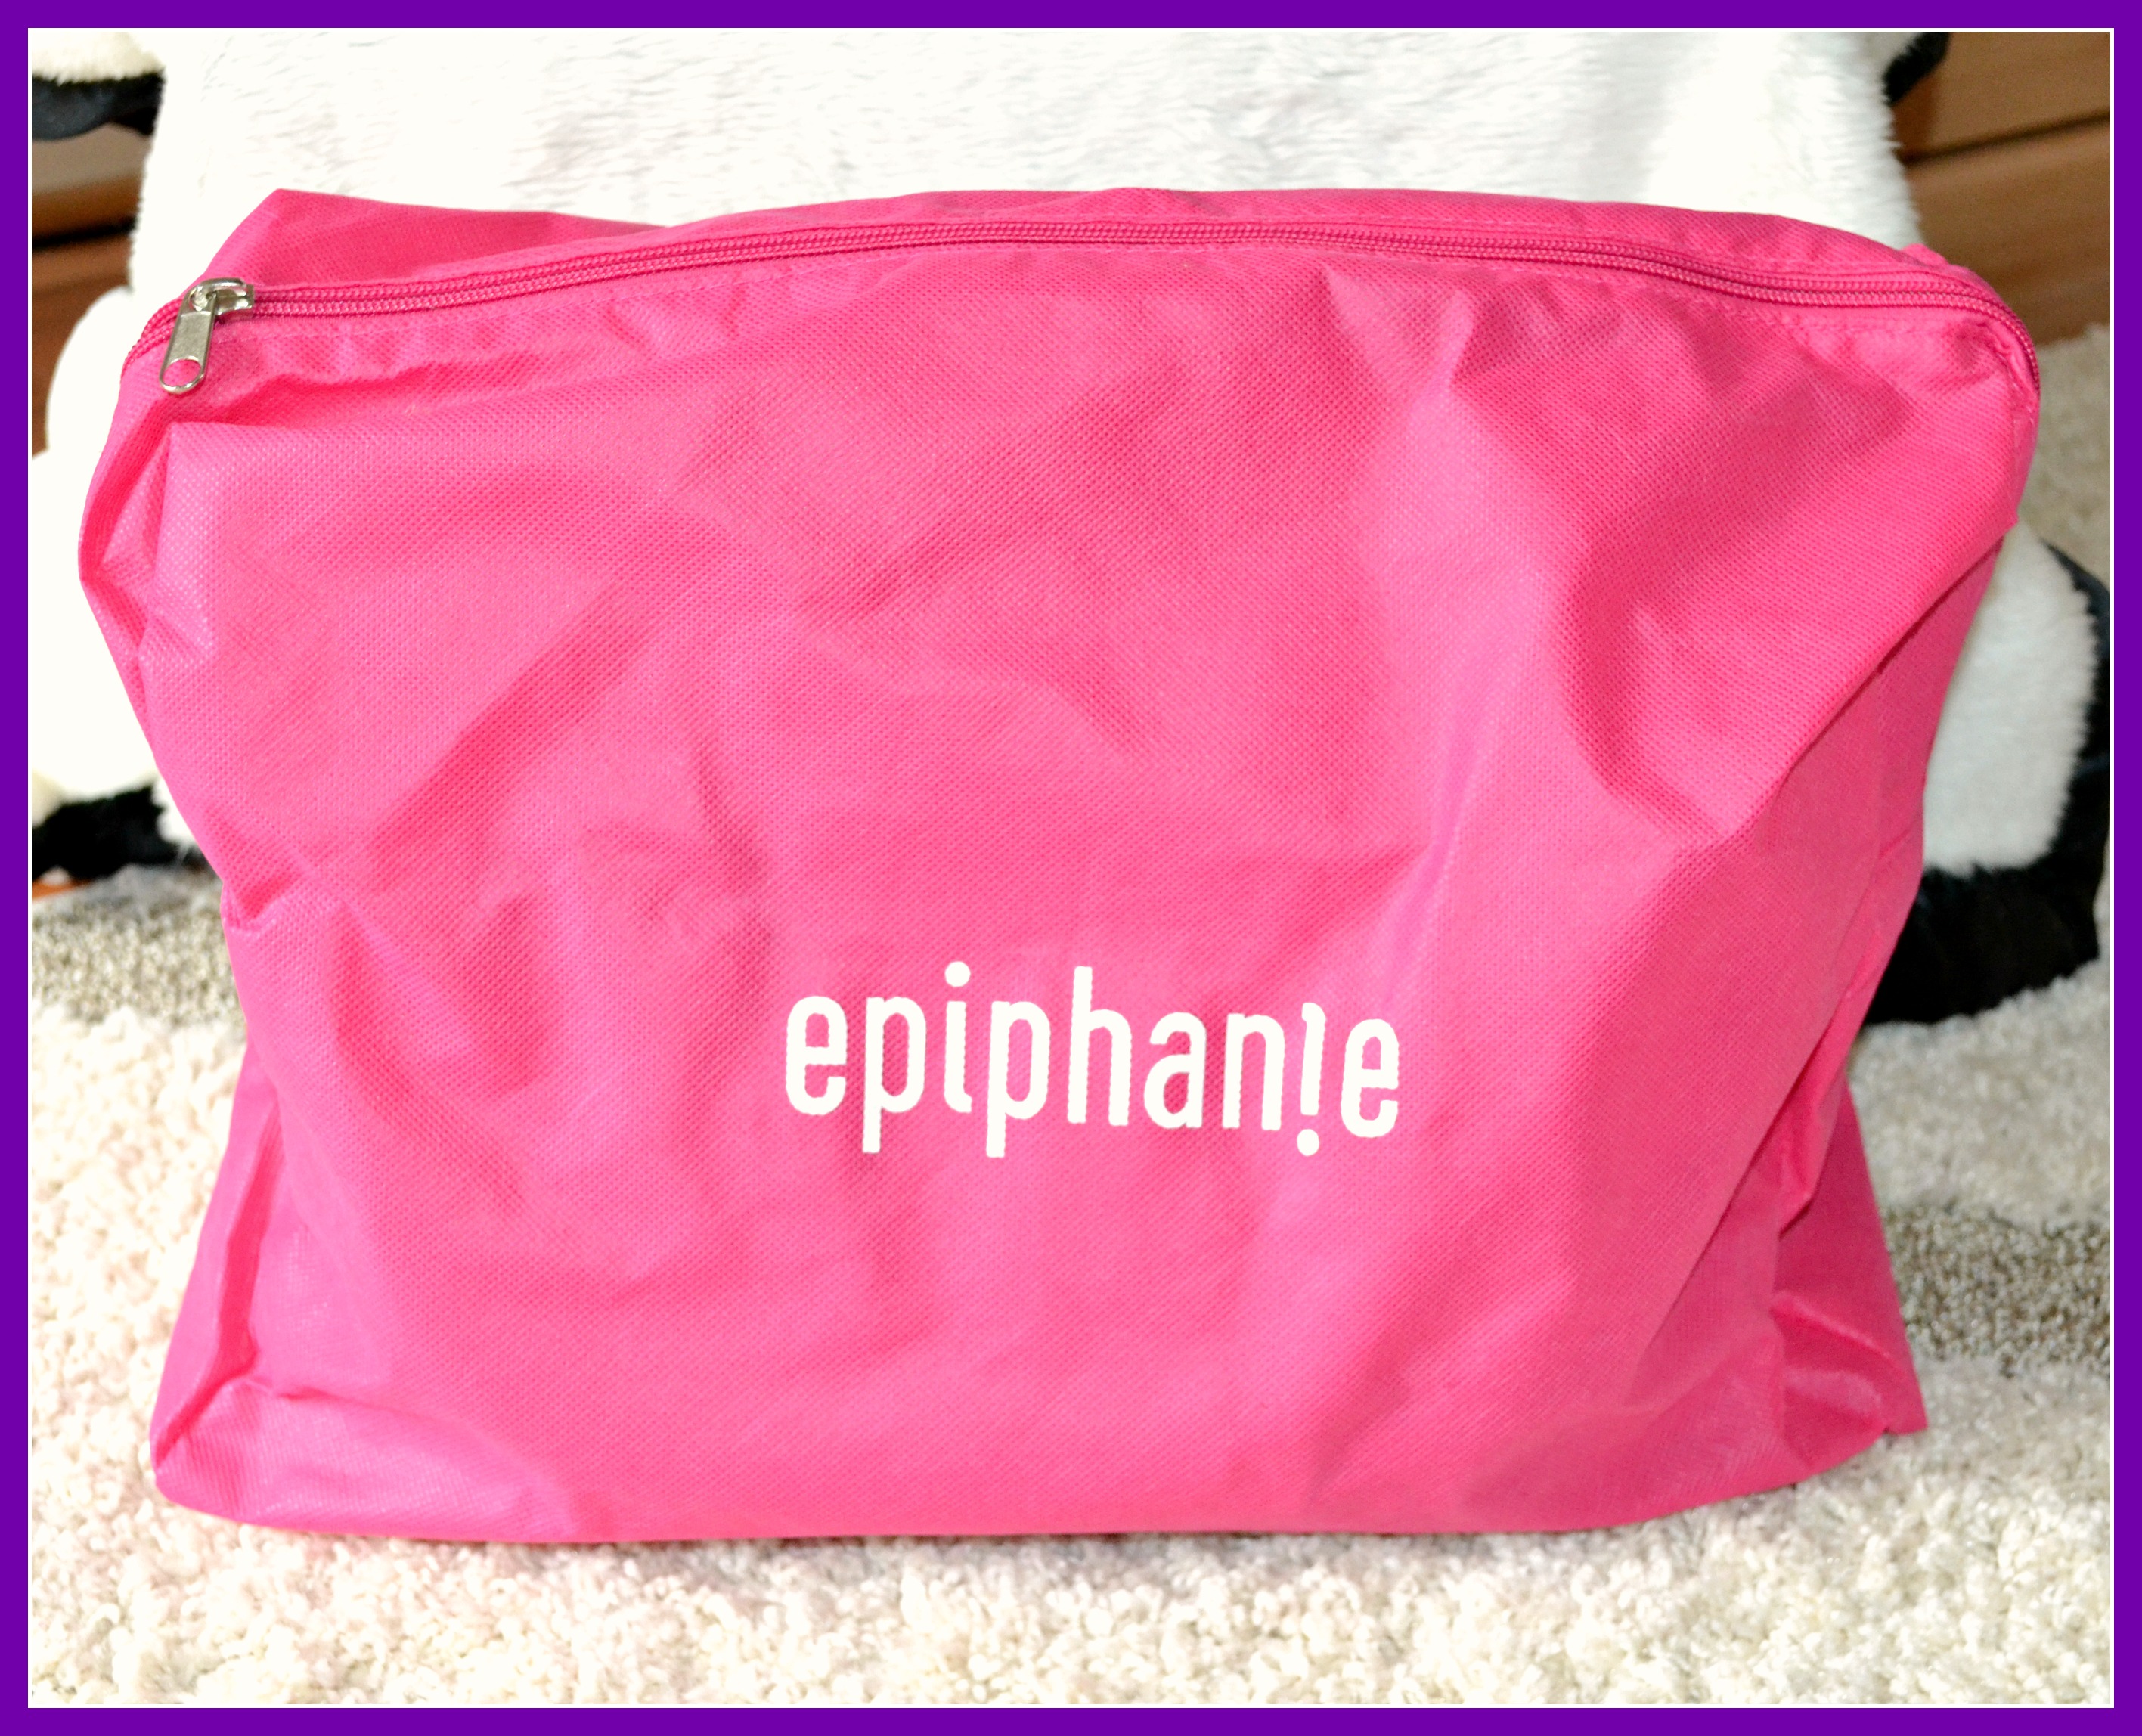 Epiphanie Camera Bag Review